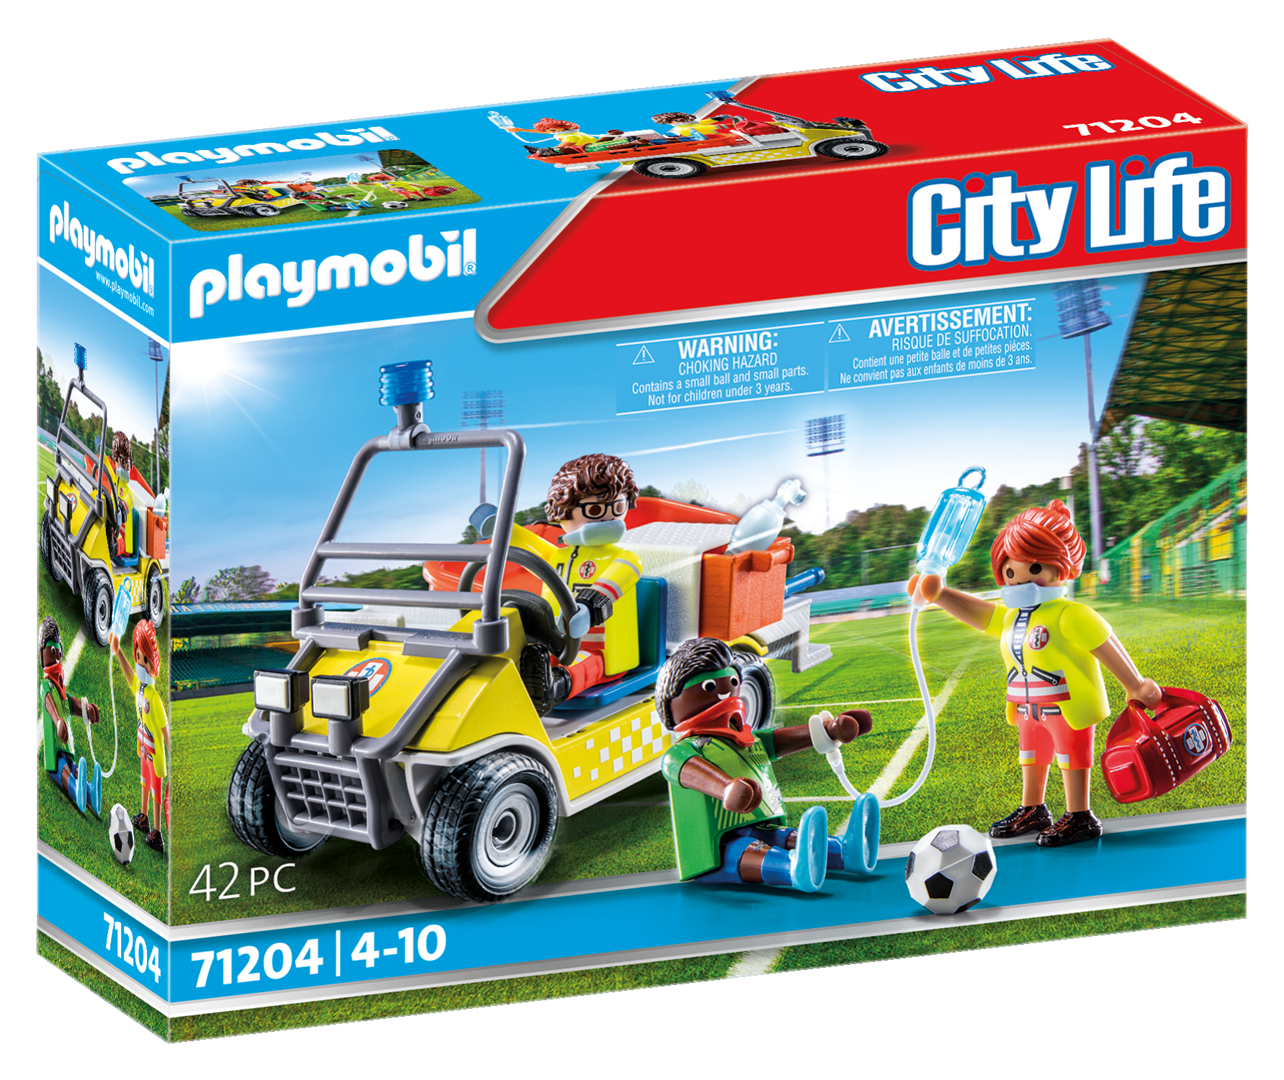 Playmobil city life 71204 veicolo di soccorso per bambini dai 4 anni in su - Playmobil